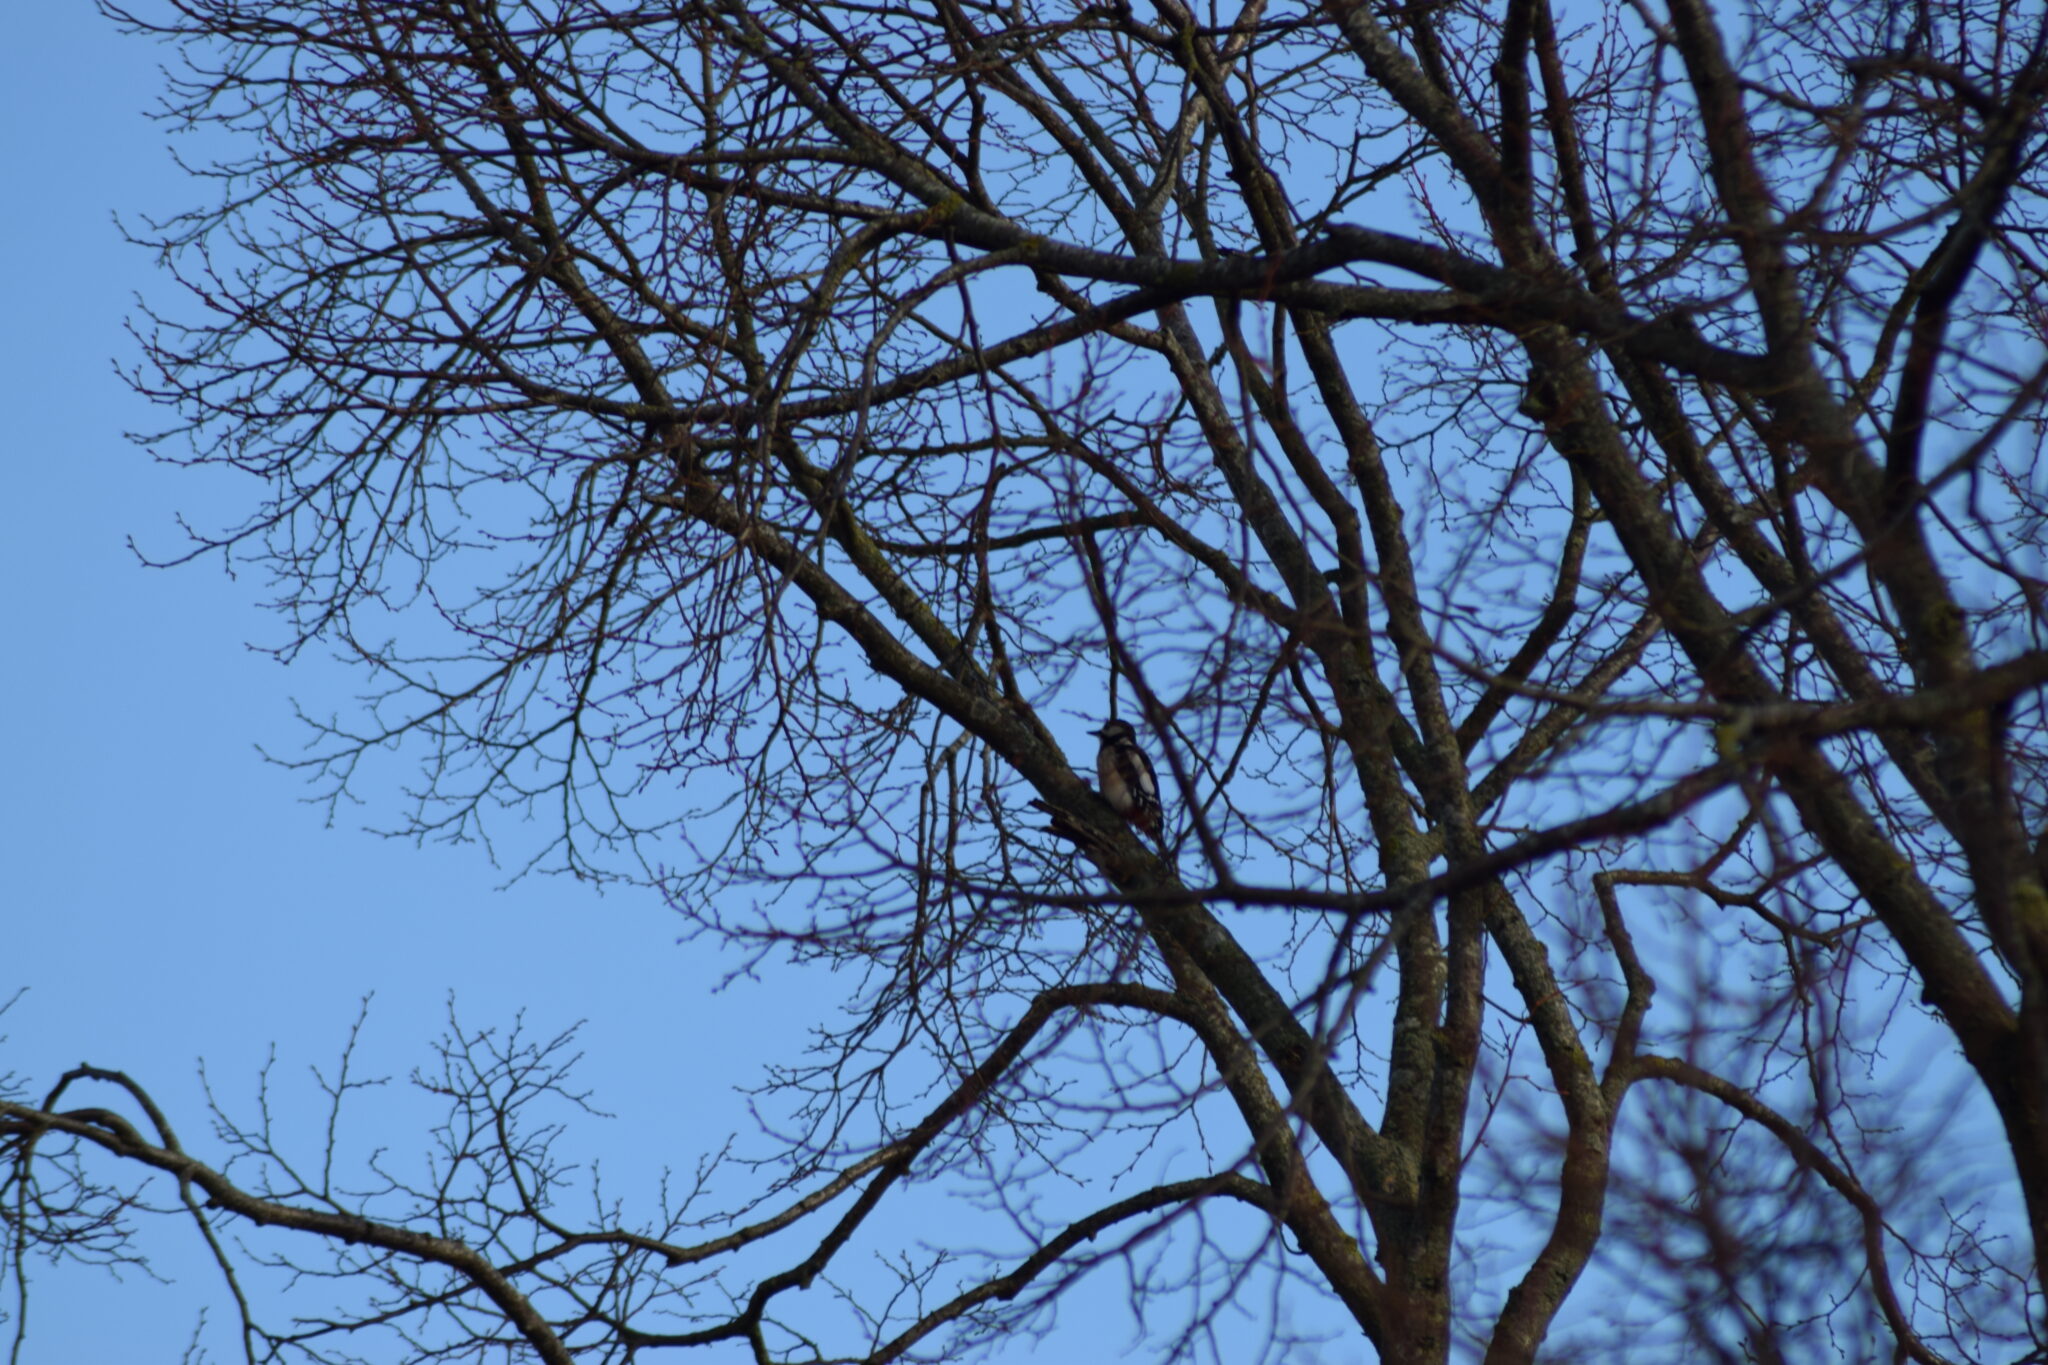 Stor Flagspætte (Dendrocopos major) i parken ved Degnemosen 27.02.2022. Ildfugl.com